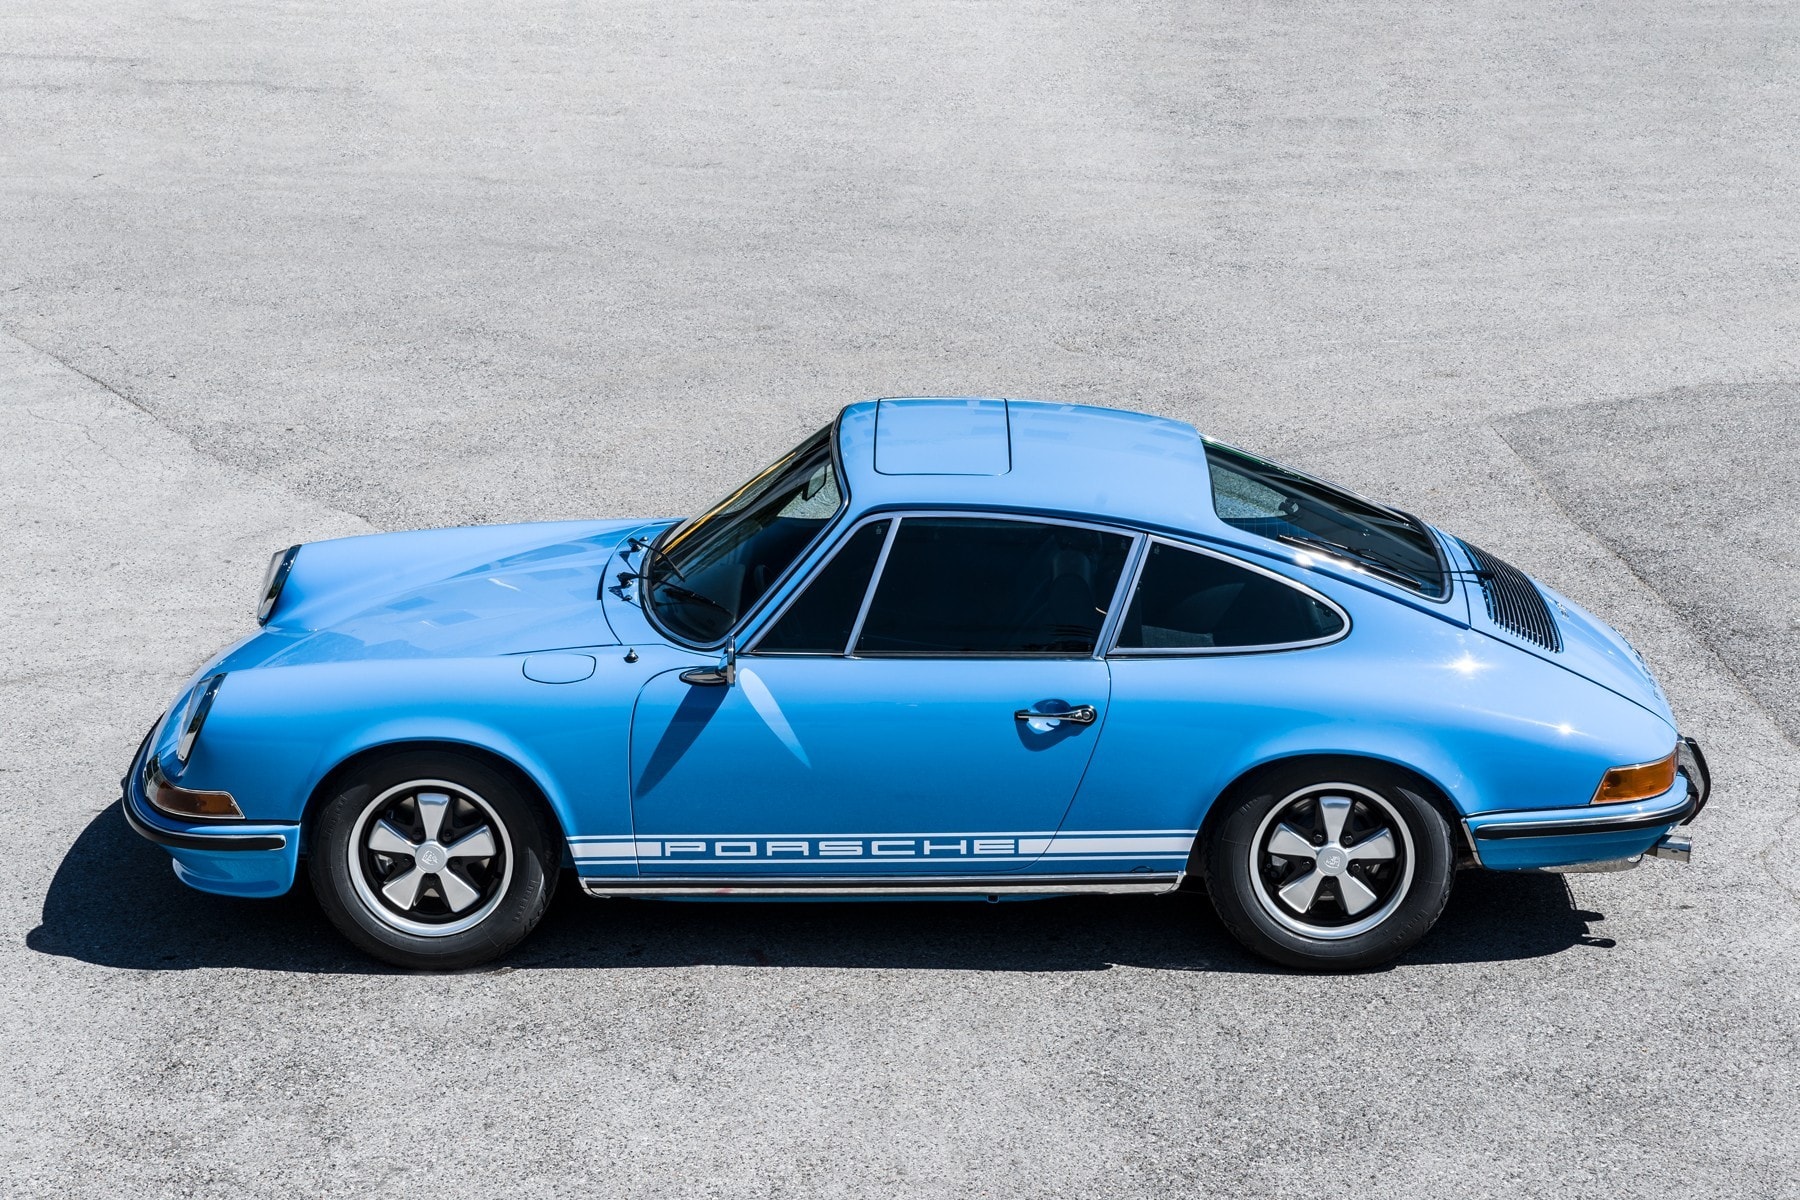 https://s1.cdn.autoevolution.com/images/news/pastel-blue-1970-porsche-911s-has-been-immaculately-restored-149173_1.jpeg